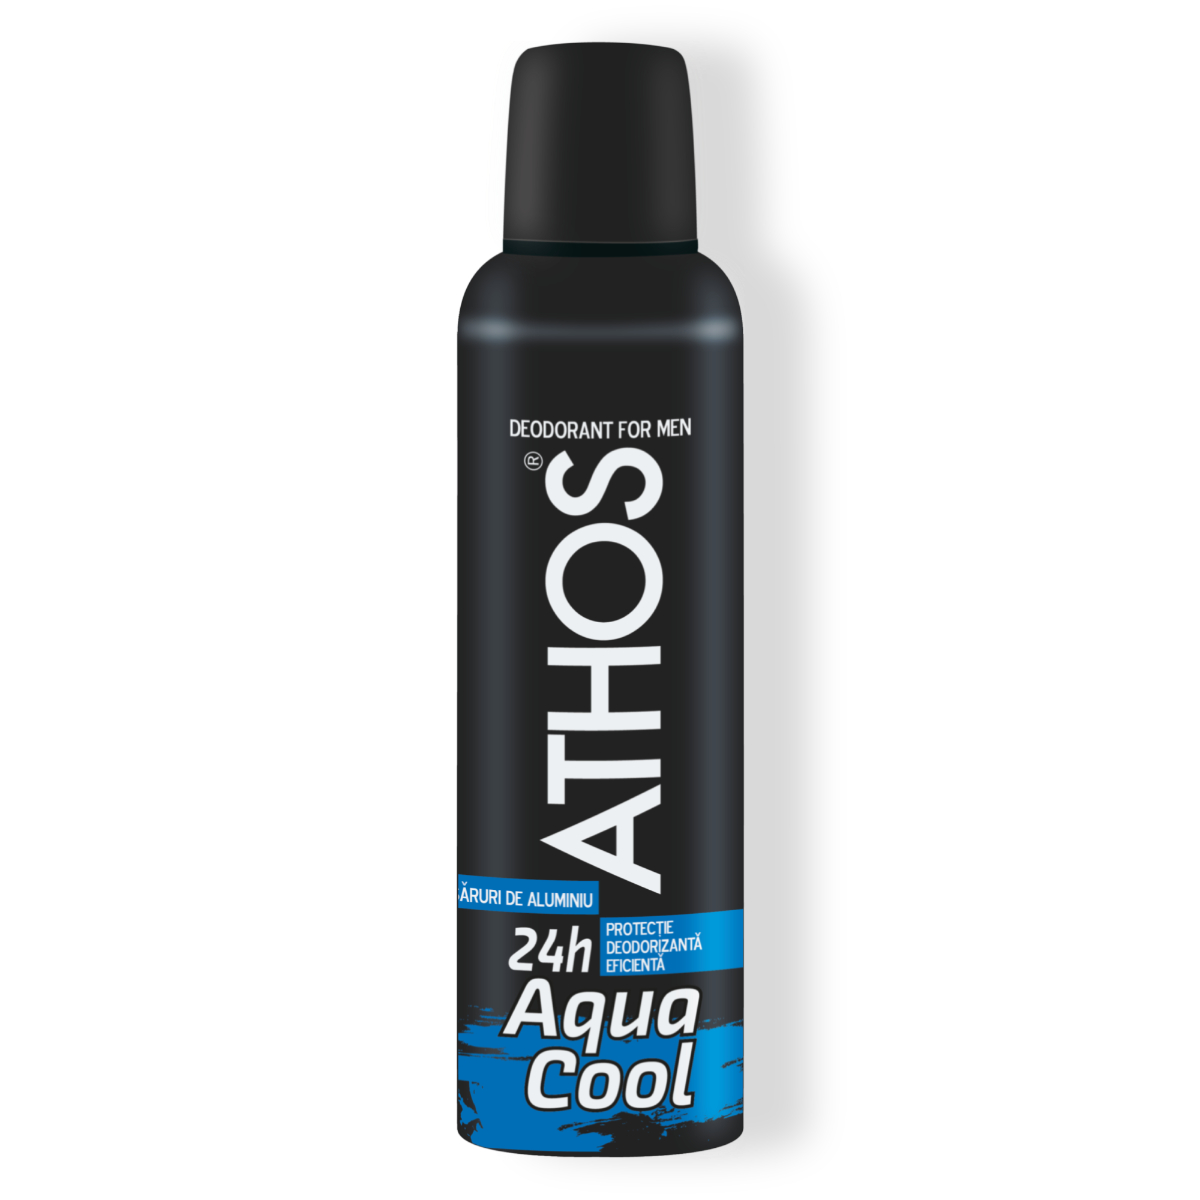 Deodorant Athos Aqua Cool